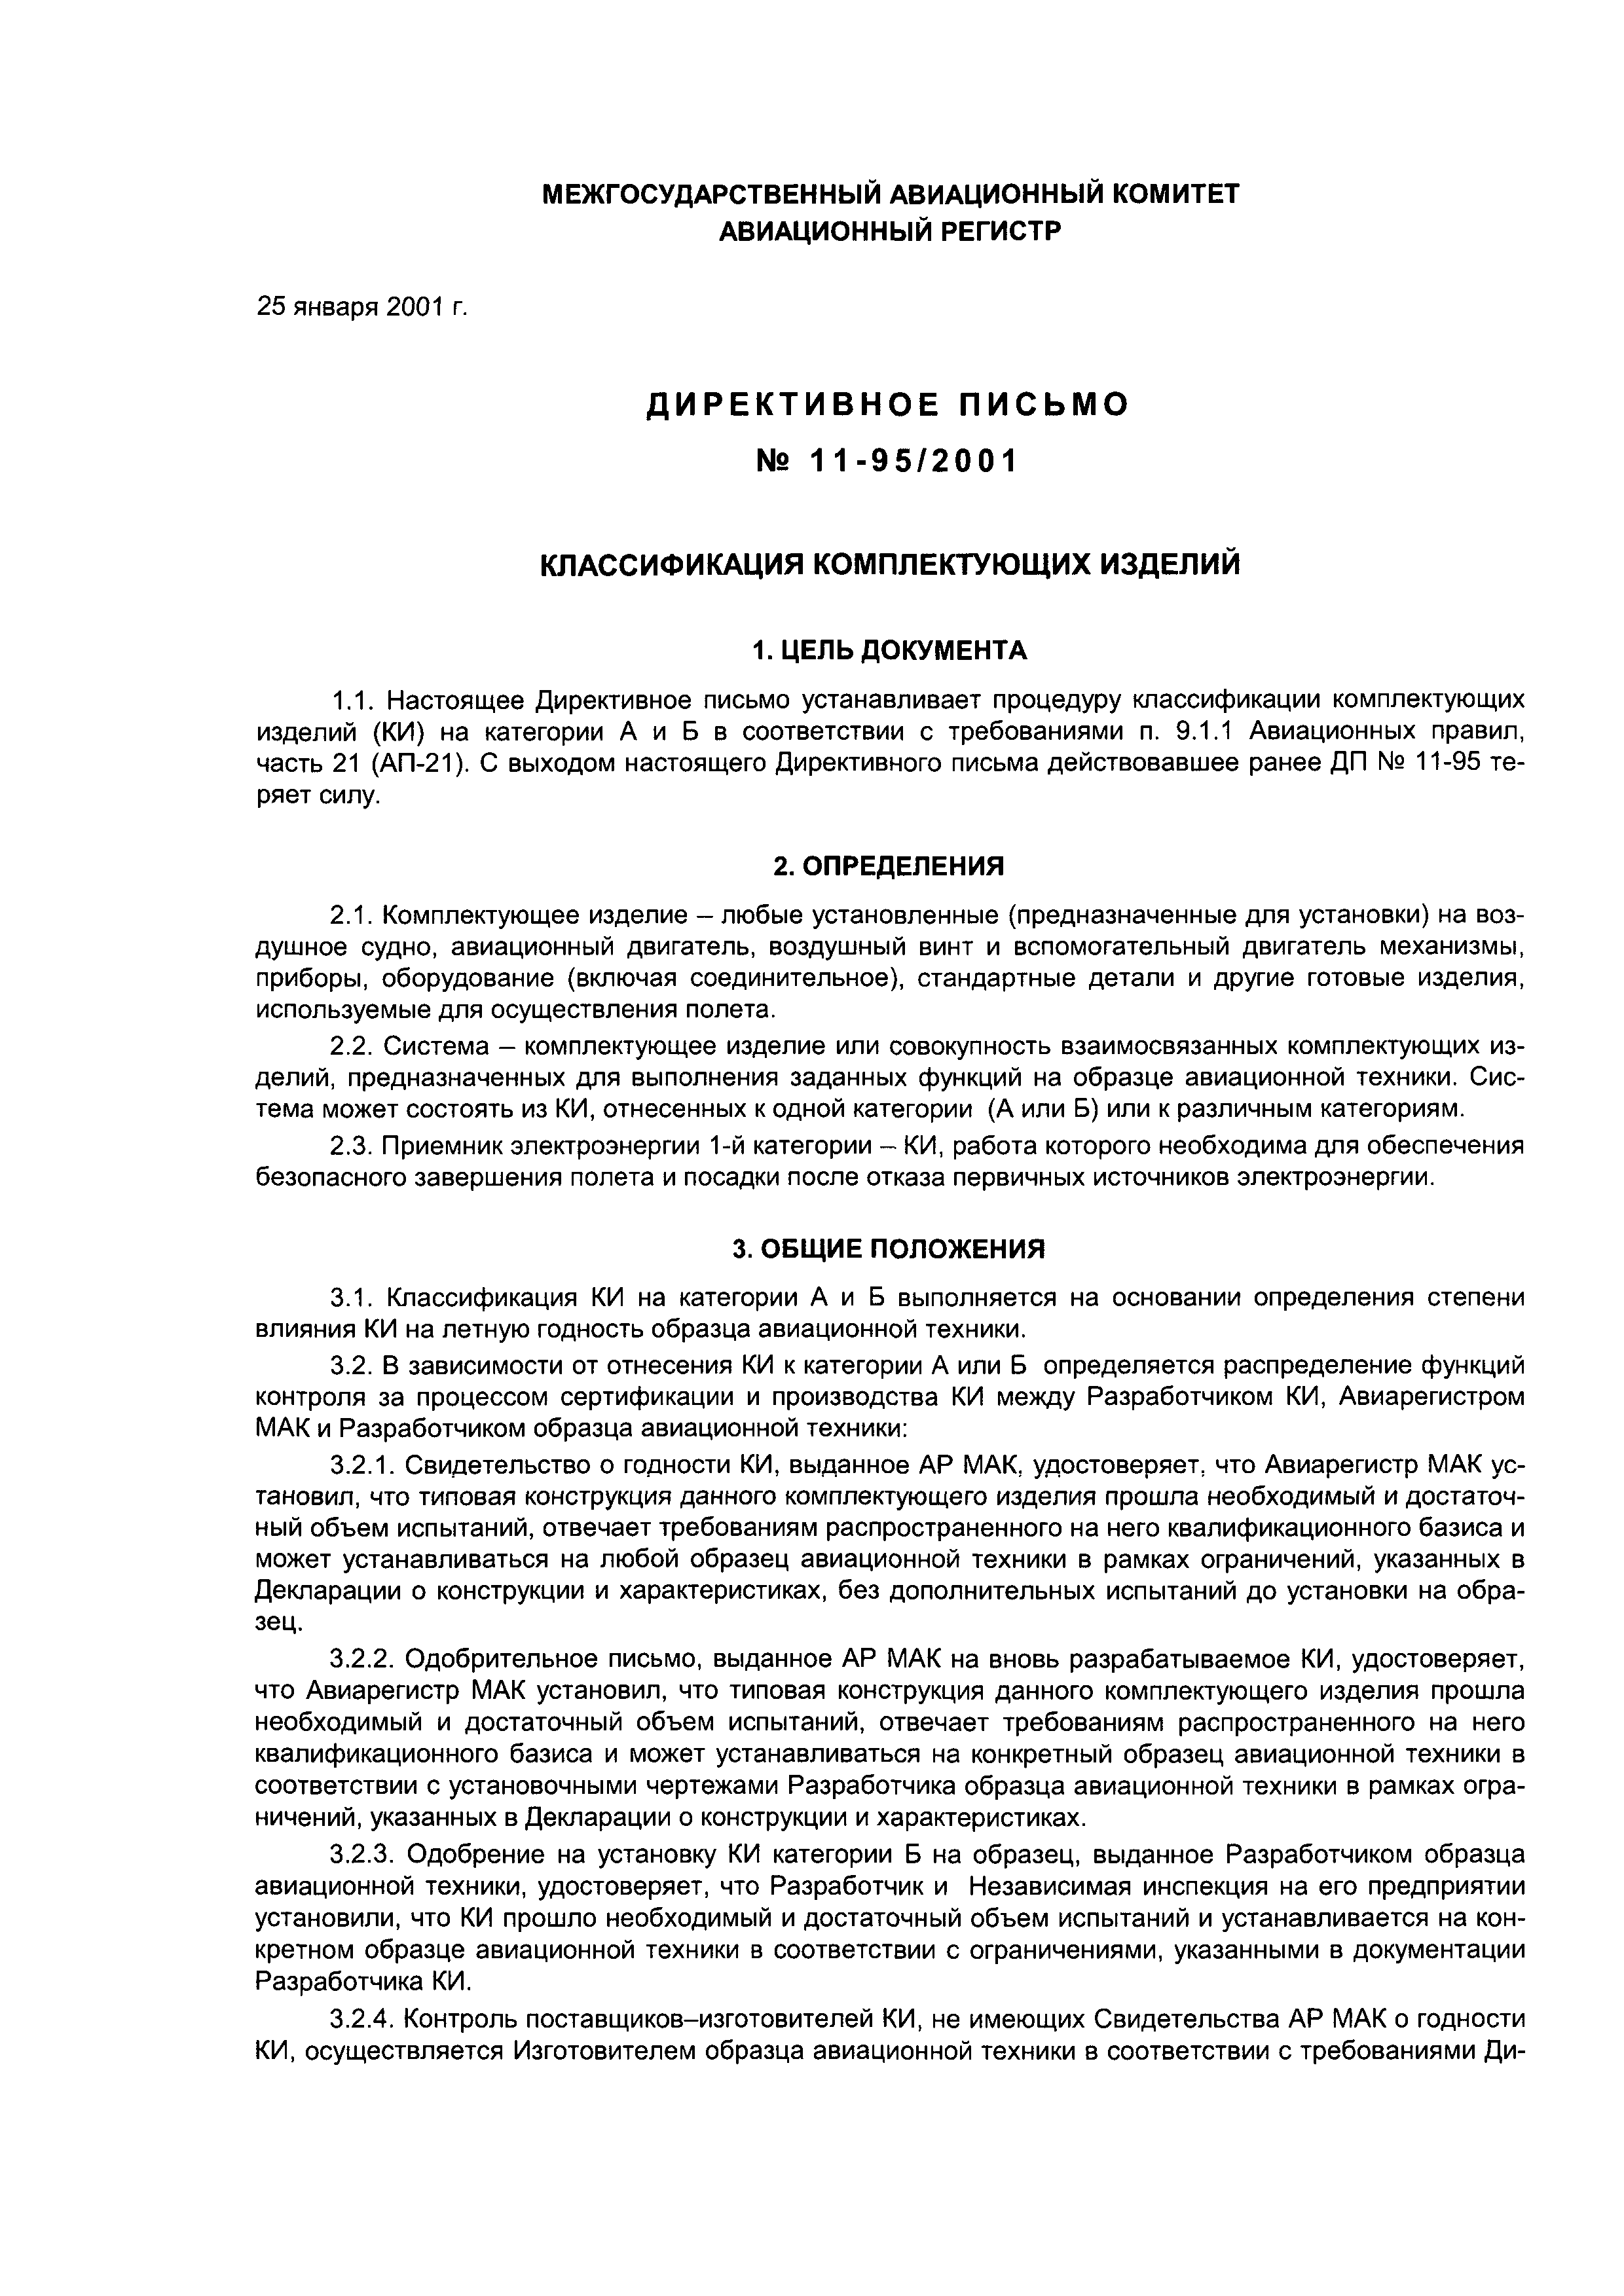 Директивное письмо 11-95/2001